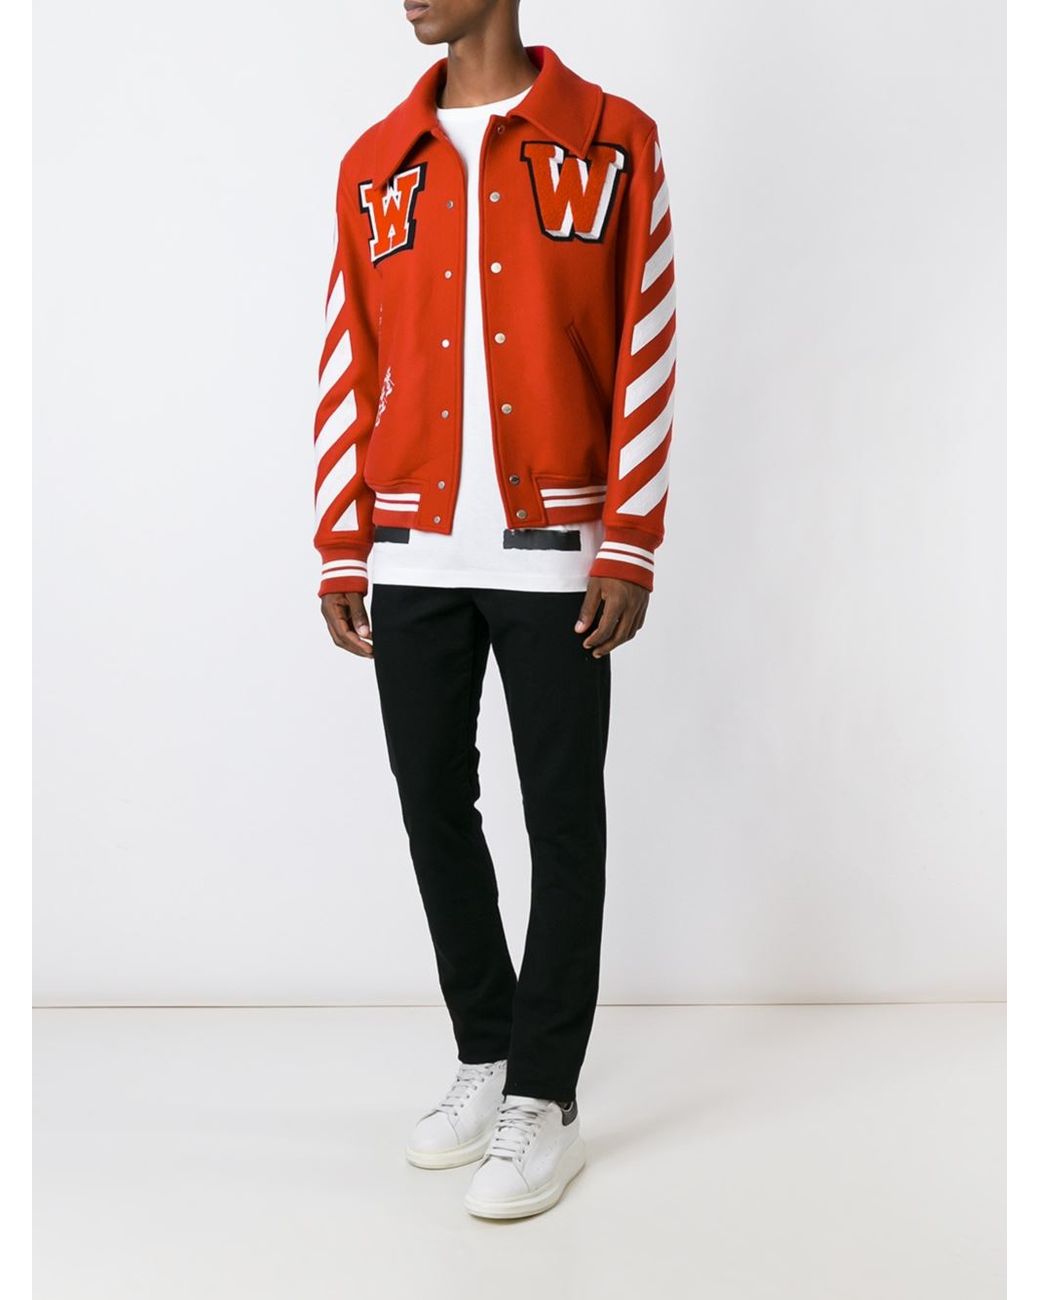 Off-White c/o Virgil Abloh Varsity Jacket Red for Men | Lyst